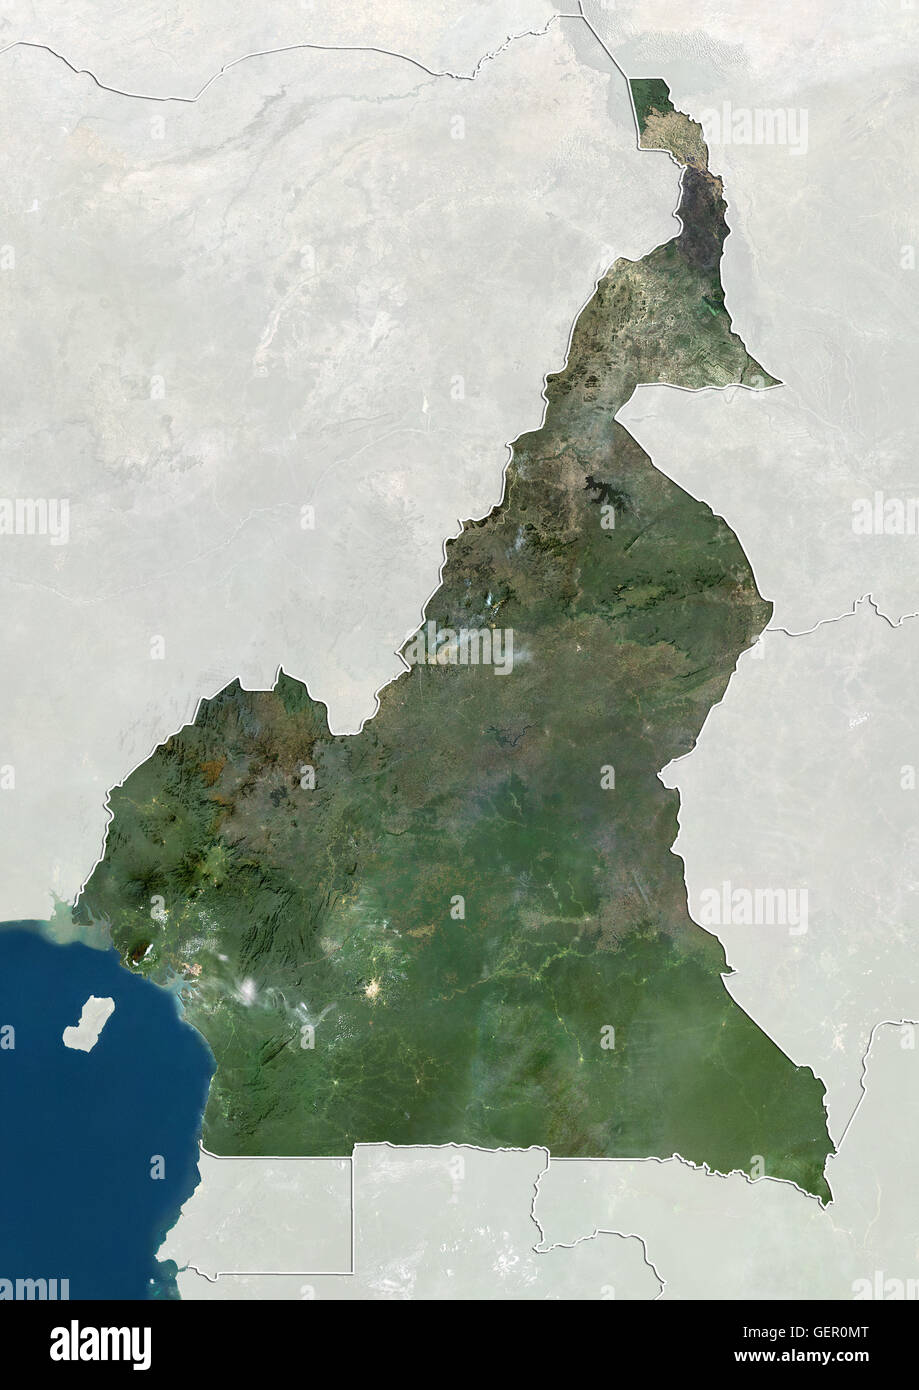 Satellitenansicht von Kamerun (mit Ländergrenzen und Maske). Dieses Bild wurde aus Daten von Landsat-Satelliten erworben erstellt. Stockfoto